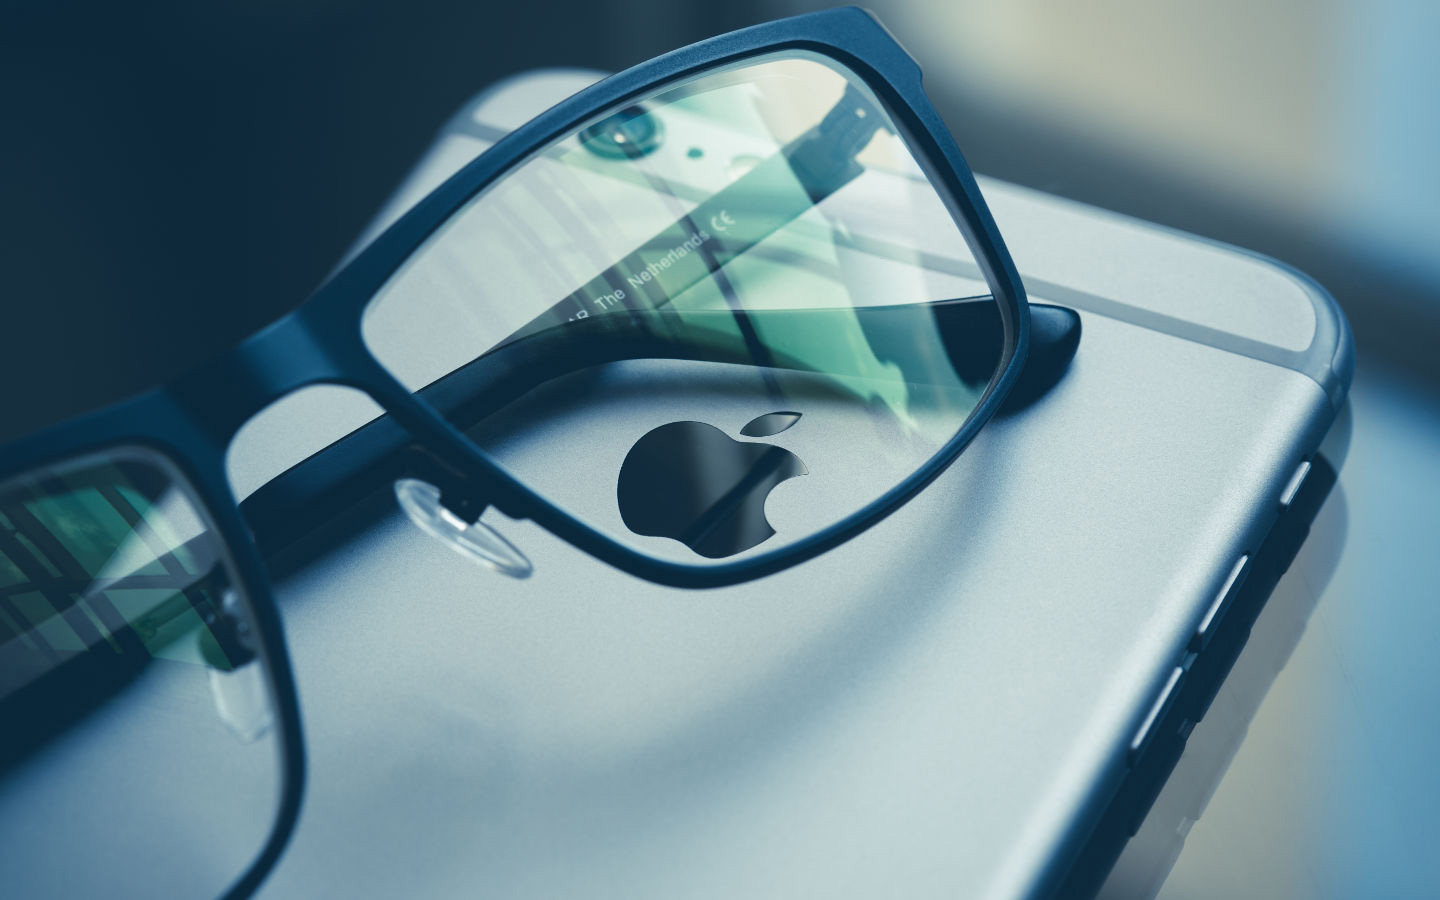 Gli Apple Glass si connetteranno al proprio iPhone come un accessorio